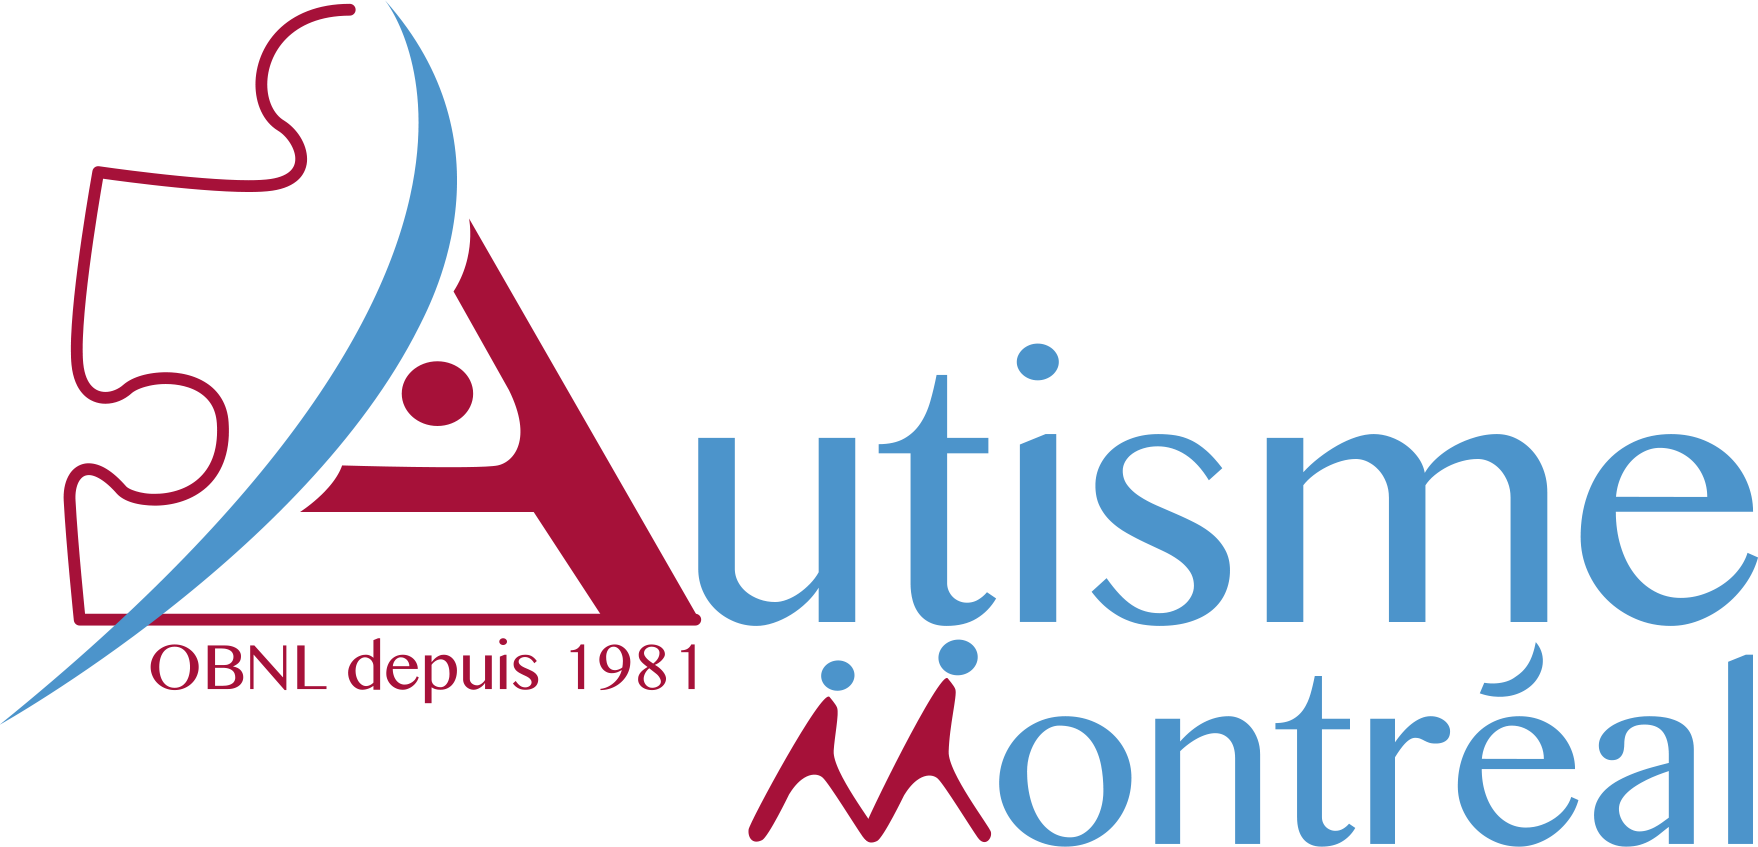 Autisme Montréal